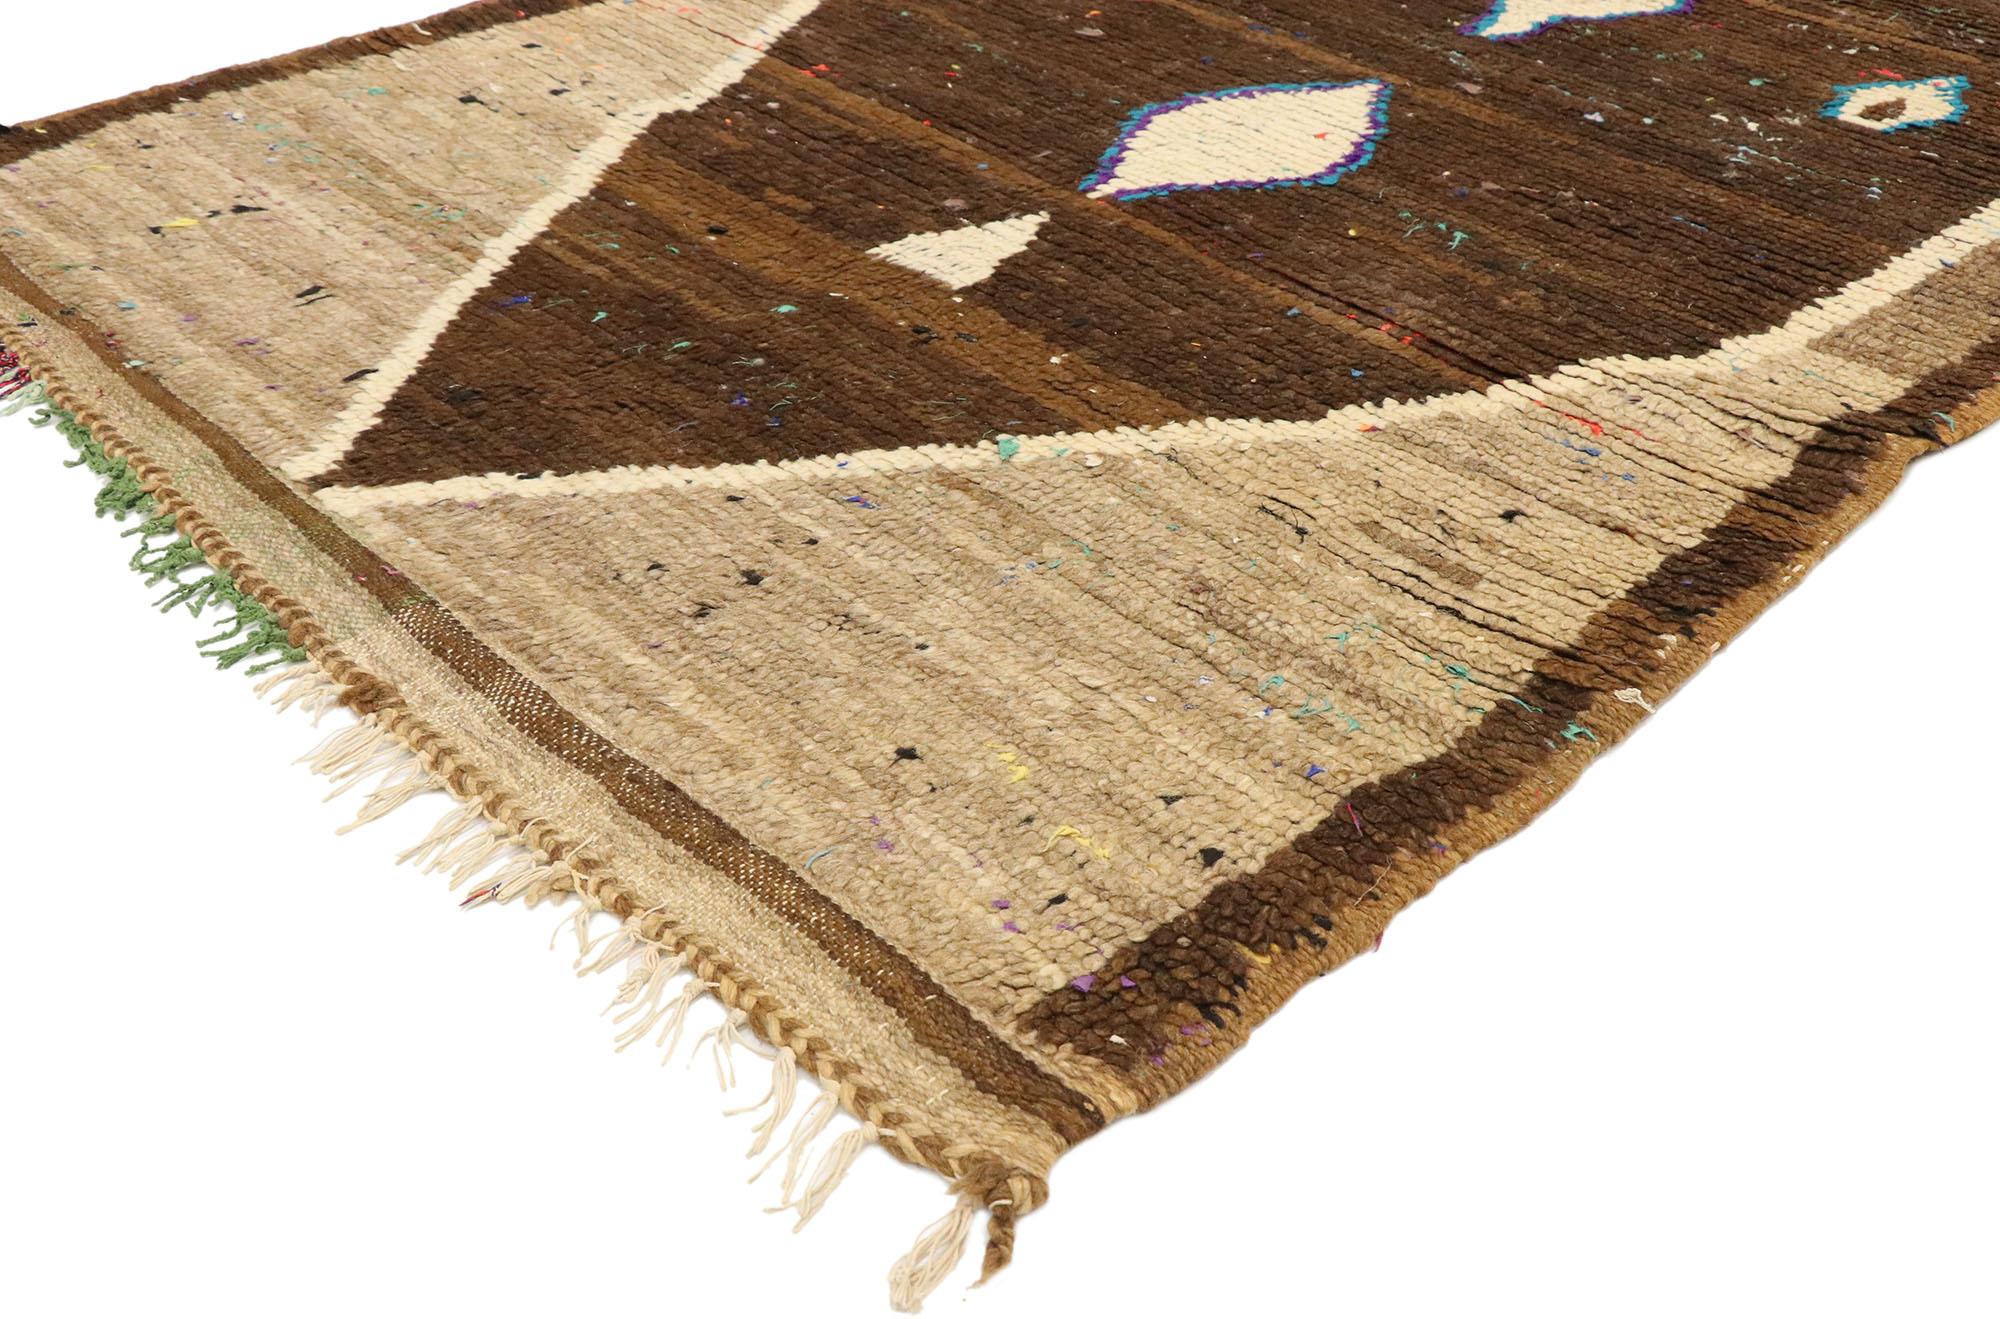 20582 Tapis marocain Vintage Brown, 03'05 x 08'08. Dans ce tapis berbère marocain vintage, un mélange de bruns terreux crée une toile de fond captivante, s'harmonisant avec le design tissé de manière complexe. Au cœur du tapis se trouve un motif de